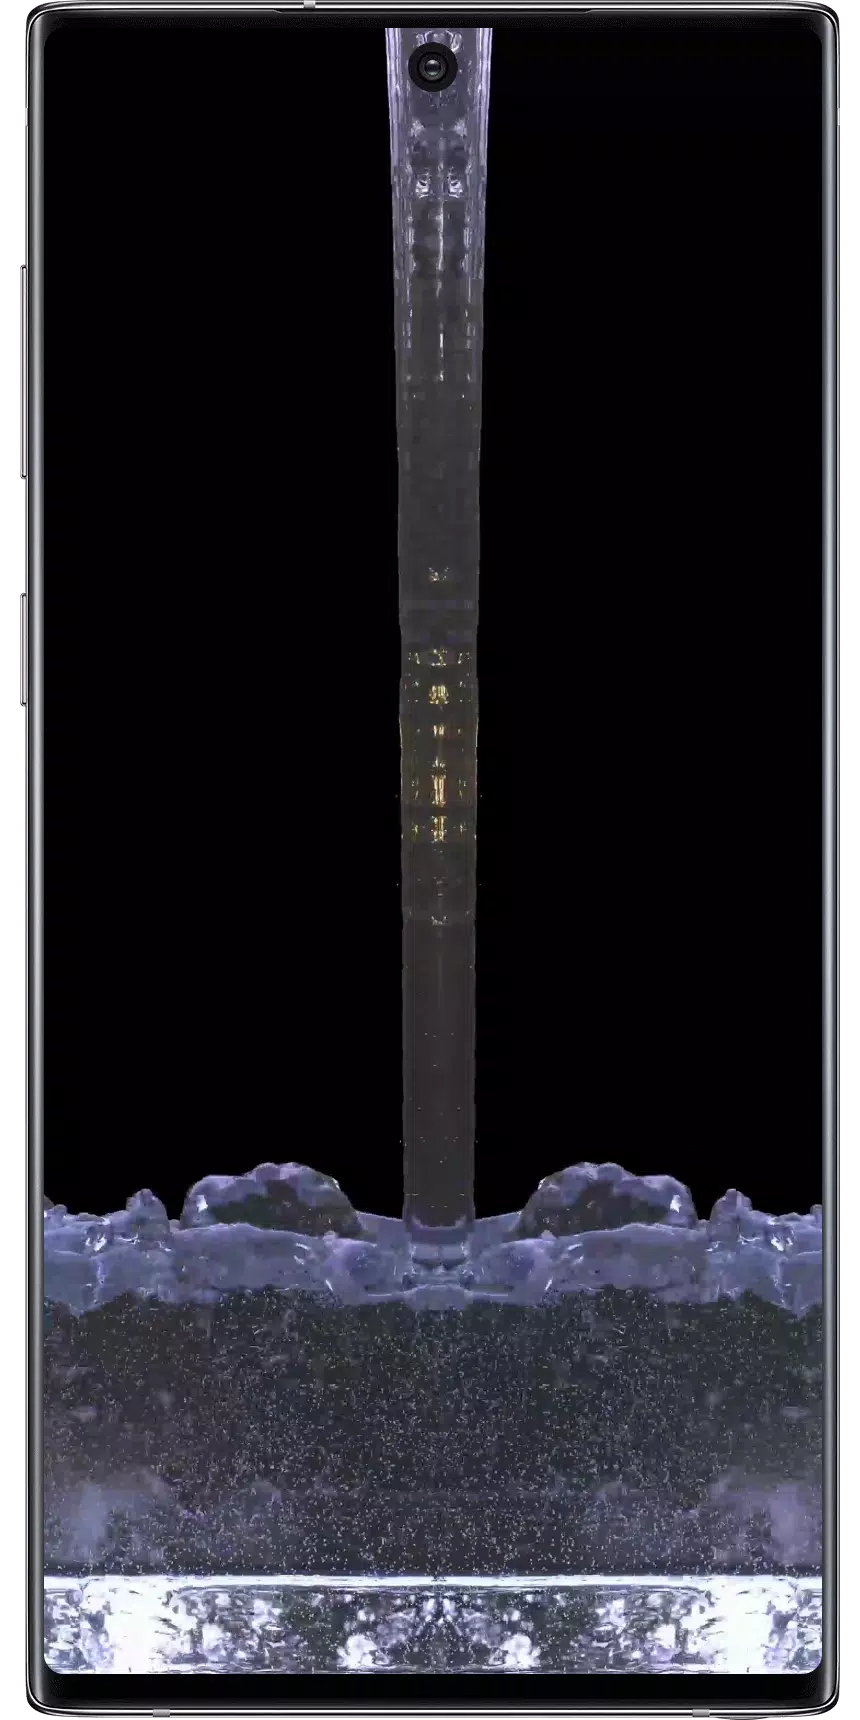 Android용 놀라운 물 라이브 배경 화면 Apk 다운로드